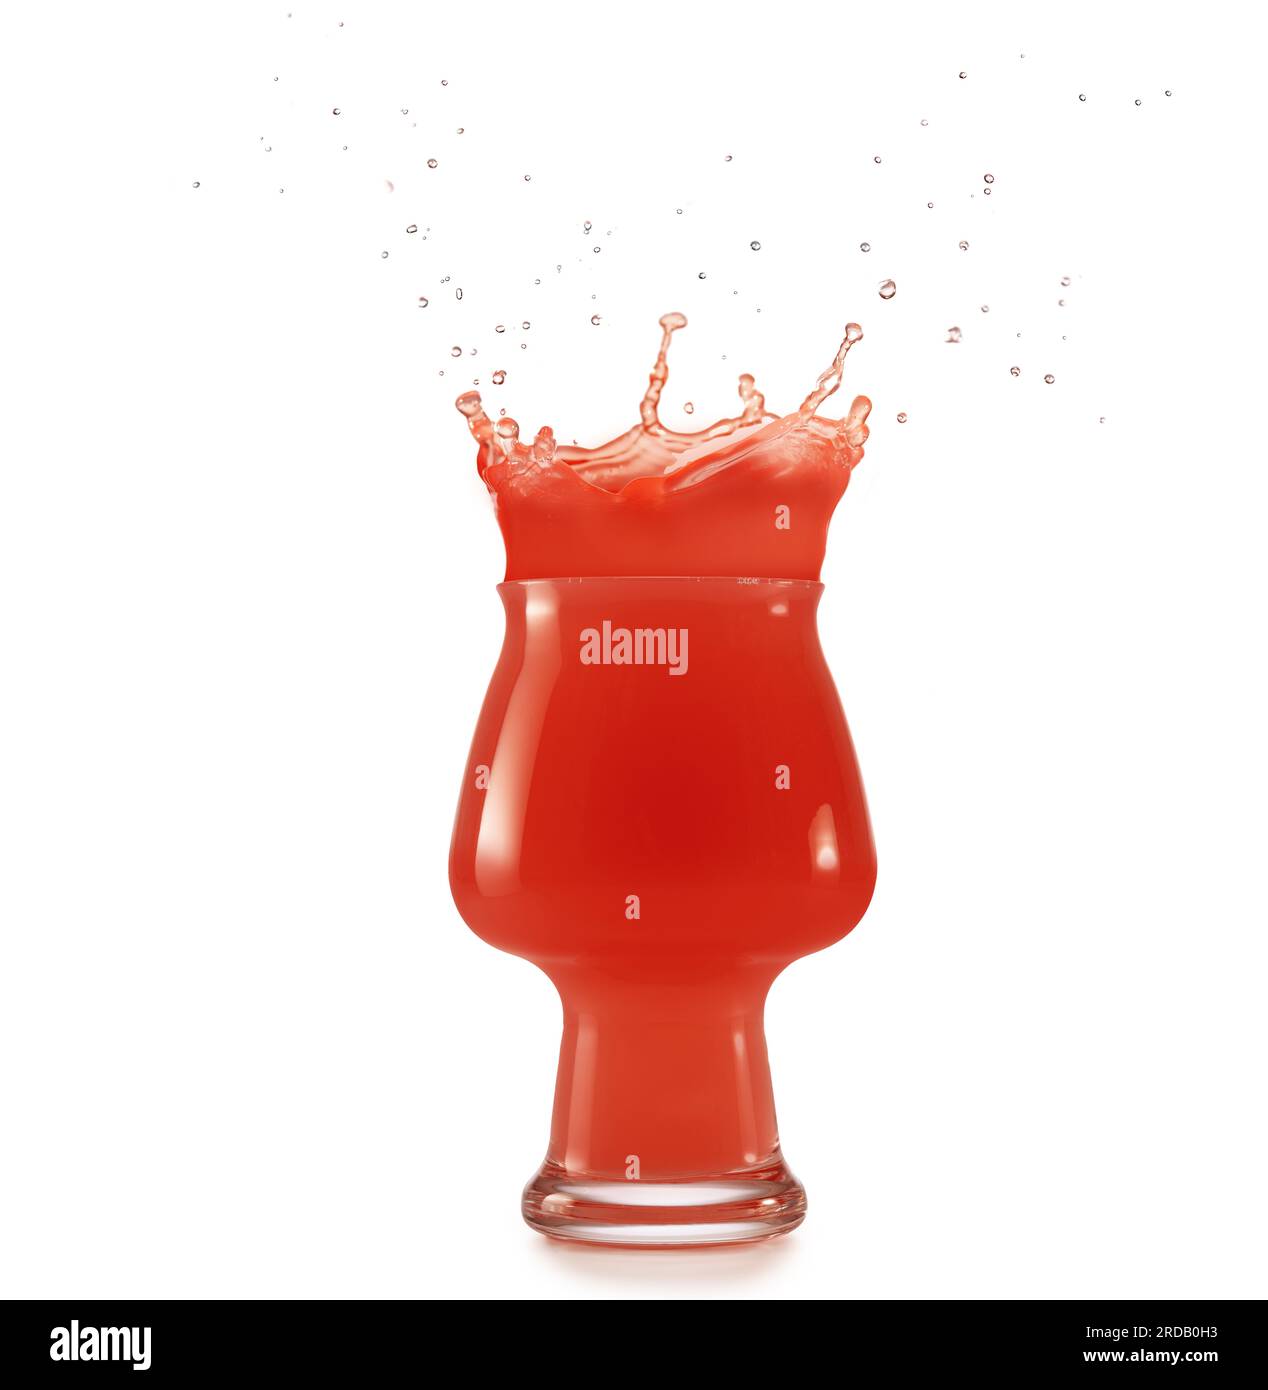 Glas voll mit roter Flüssigkeit, die auf weißem Hintergrund herausspritzt Stockfoto